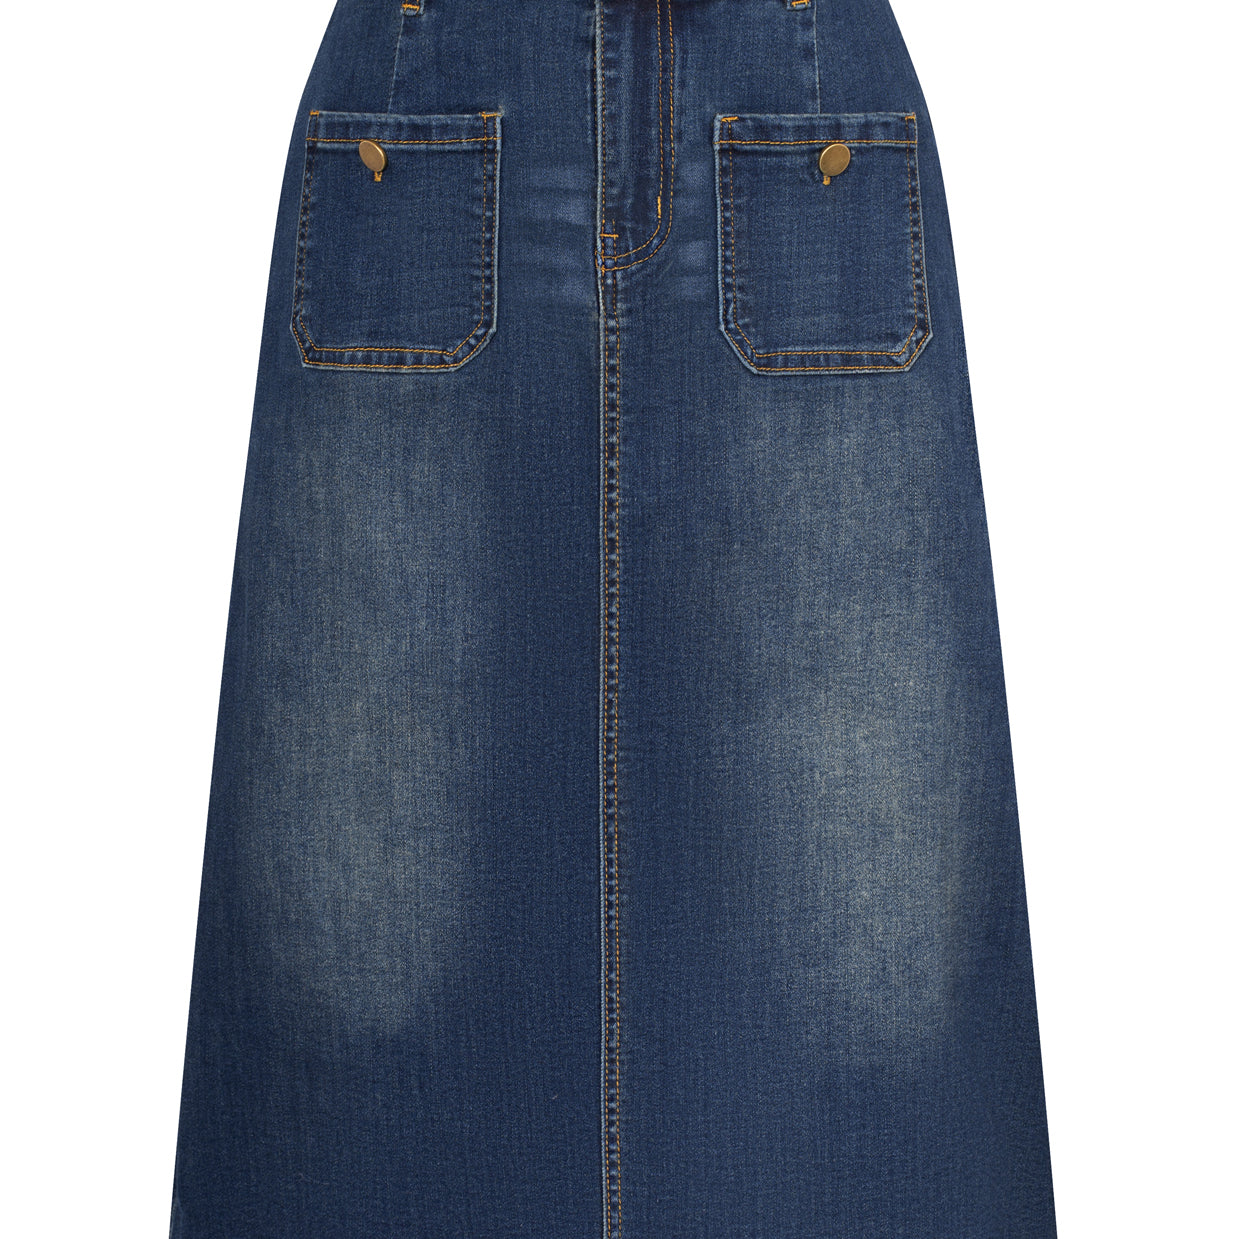 Denim Skirt with Belt Knee Length High Waisted Jean Skirts for Women